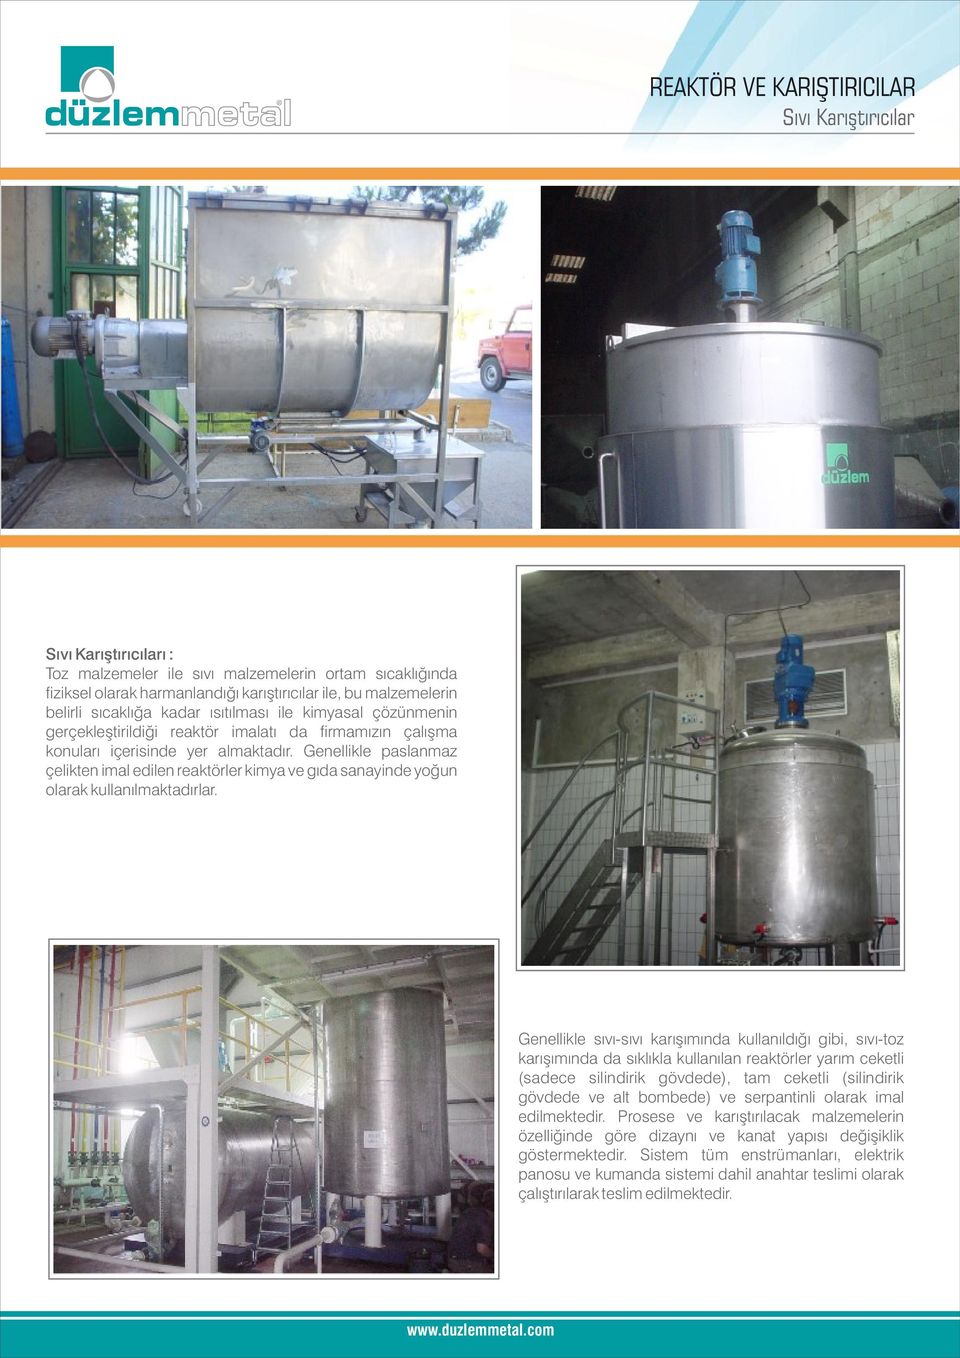 Genellikle paslanmaz çelikten imal edilen reaktörler kimya ve gıda sanayinde yoğun olarak kullanılmaktadırlar.